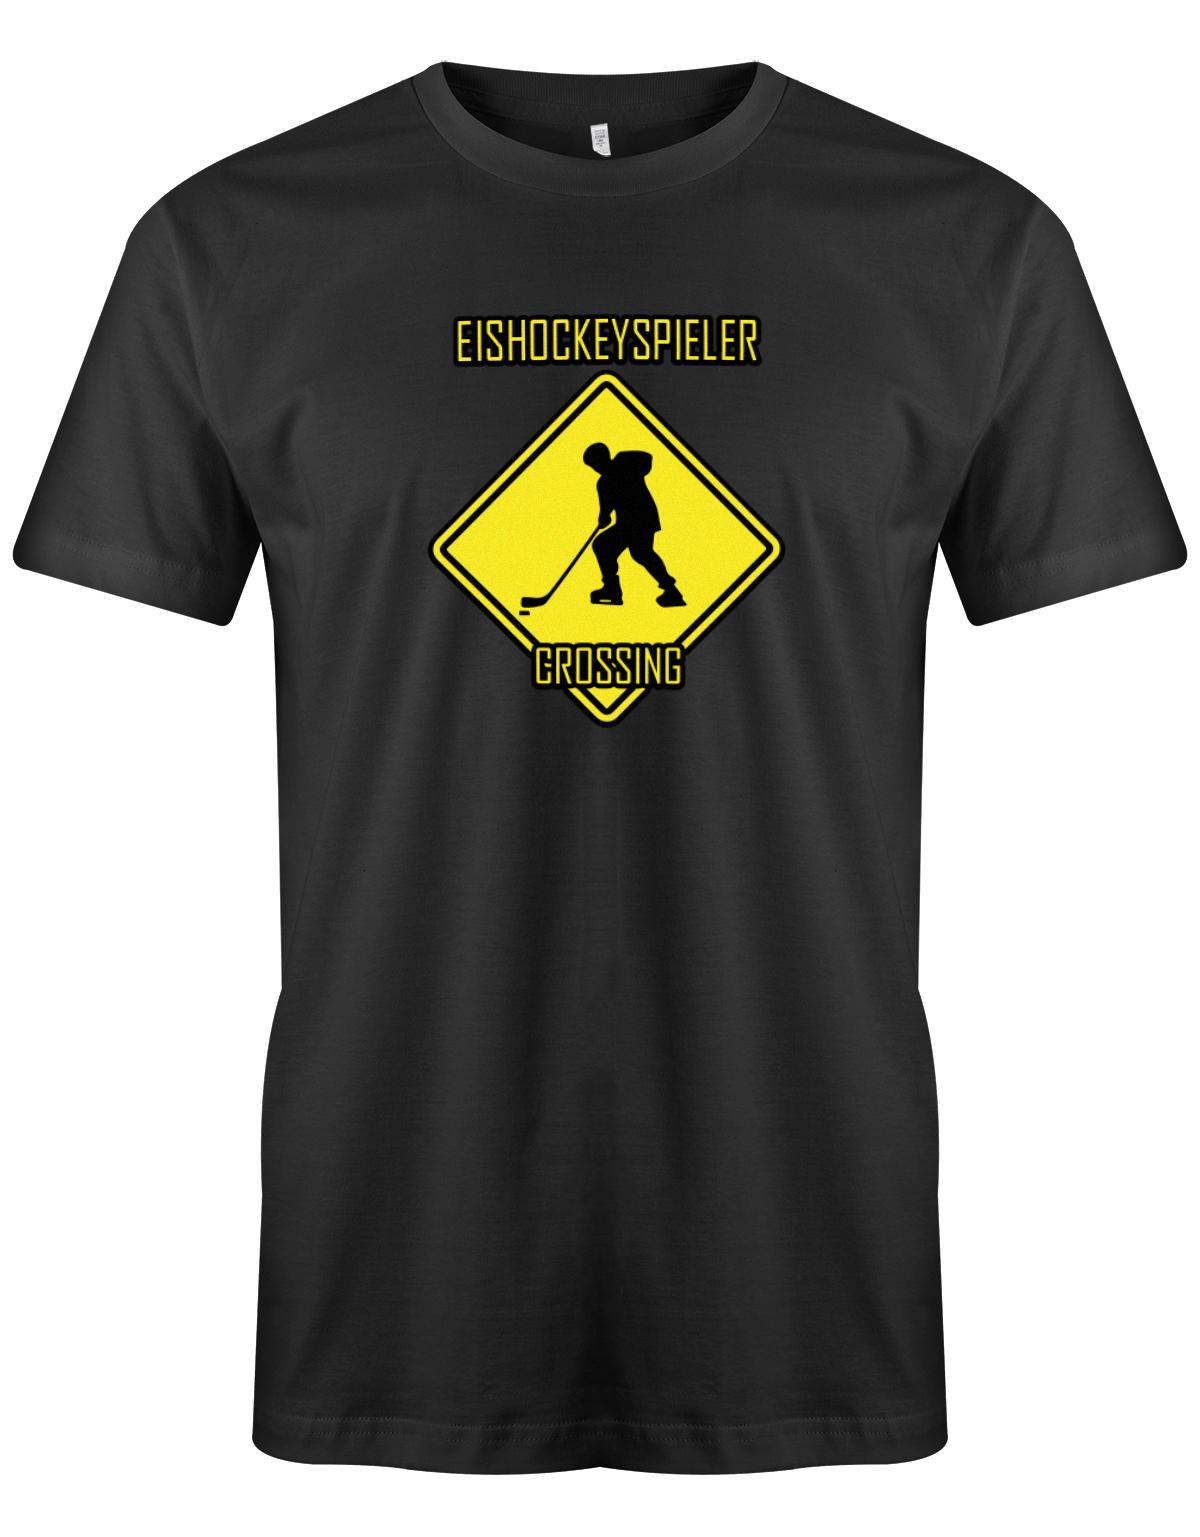 Eishockeyspieler-Crossing-Eishockey-Shirt-Herren-SChwwarz